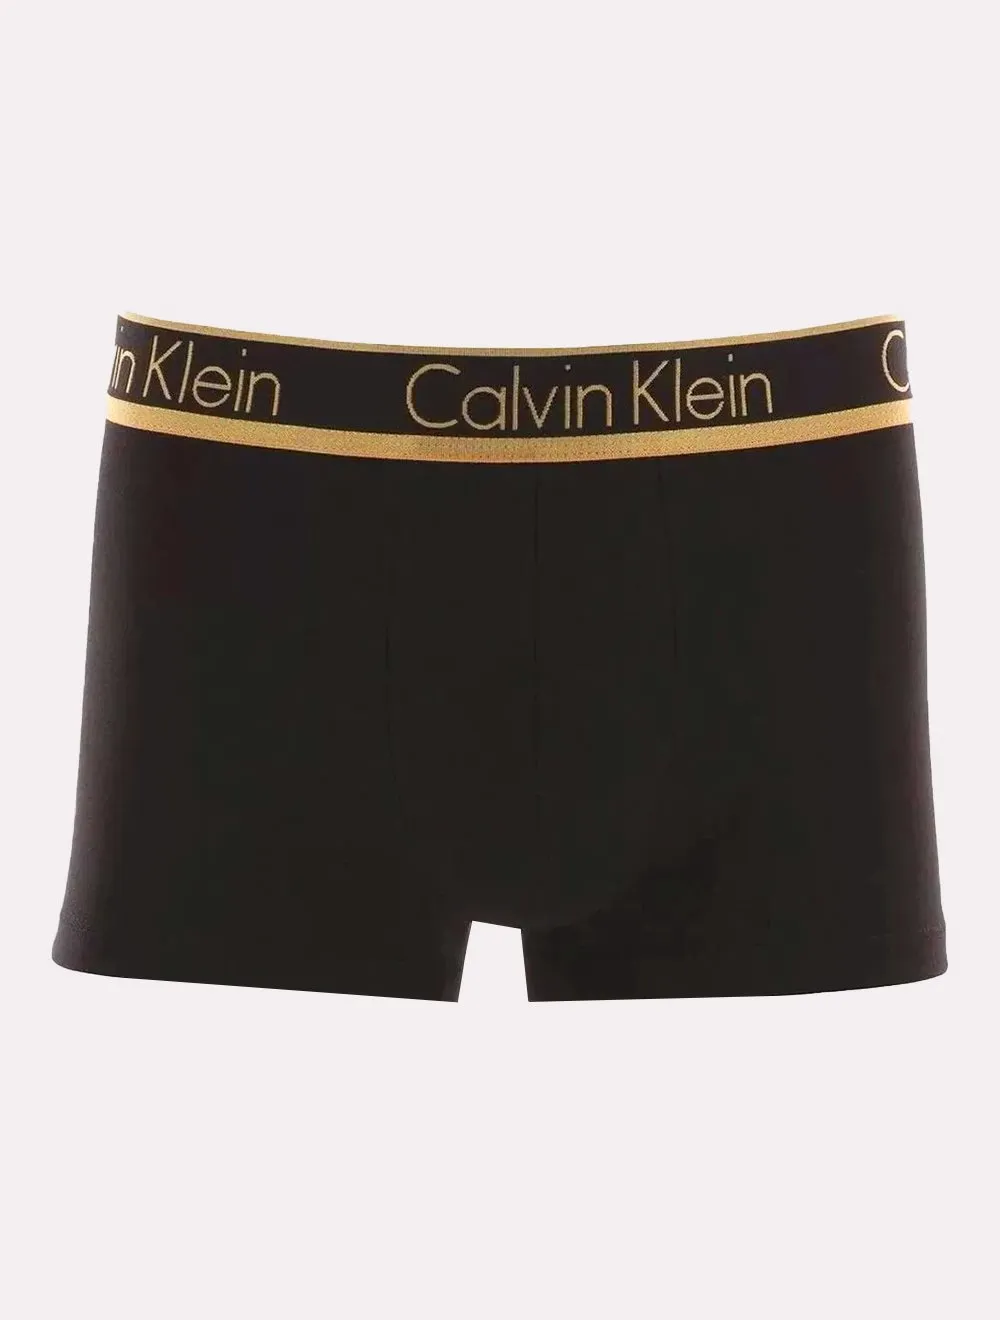 Cueca Calvin Klein Trunk Modal Dourado C10.03 PT03 Preta 1UN